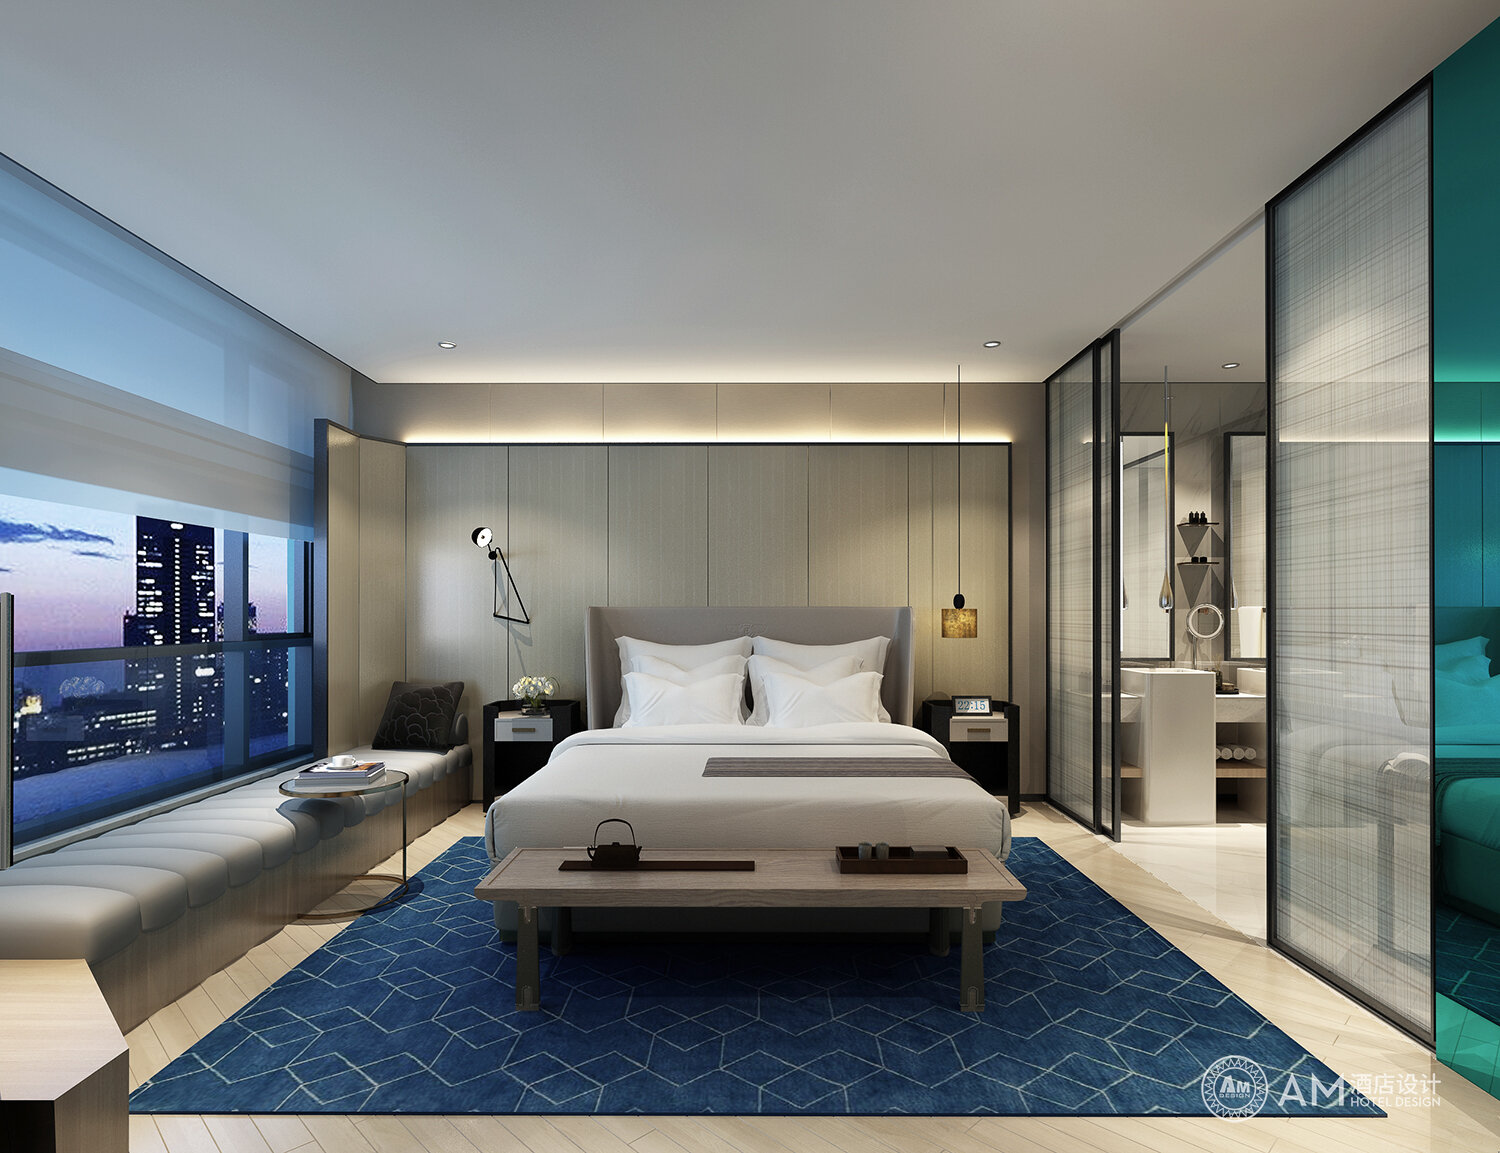 AM DESIGN | Xi'an, Shaanxi Jinpan Hotel Guest Room Design